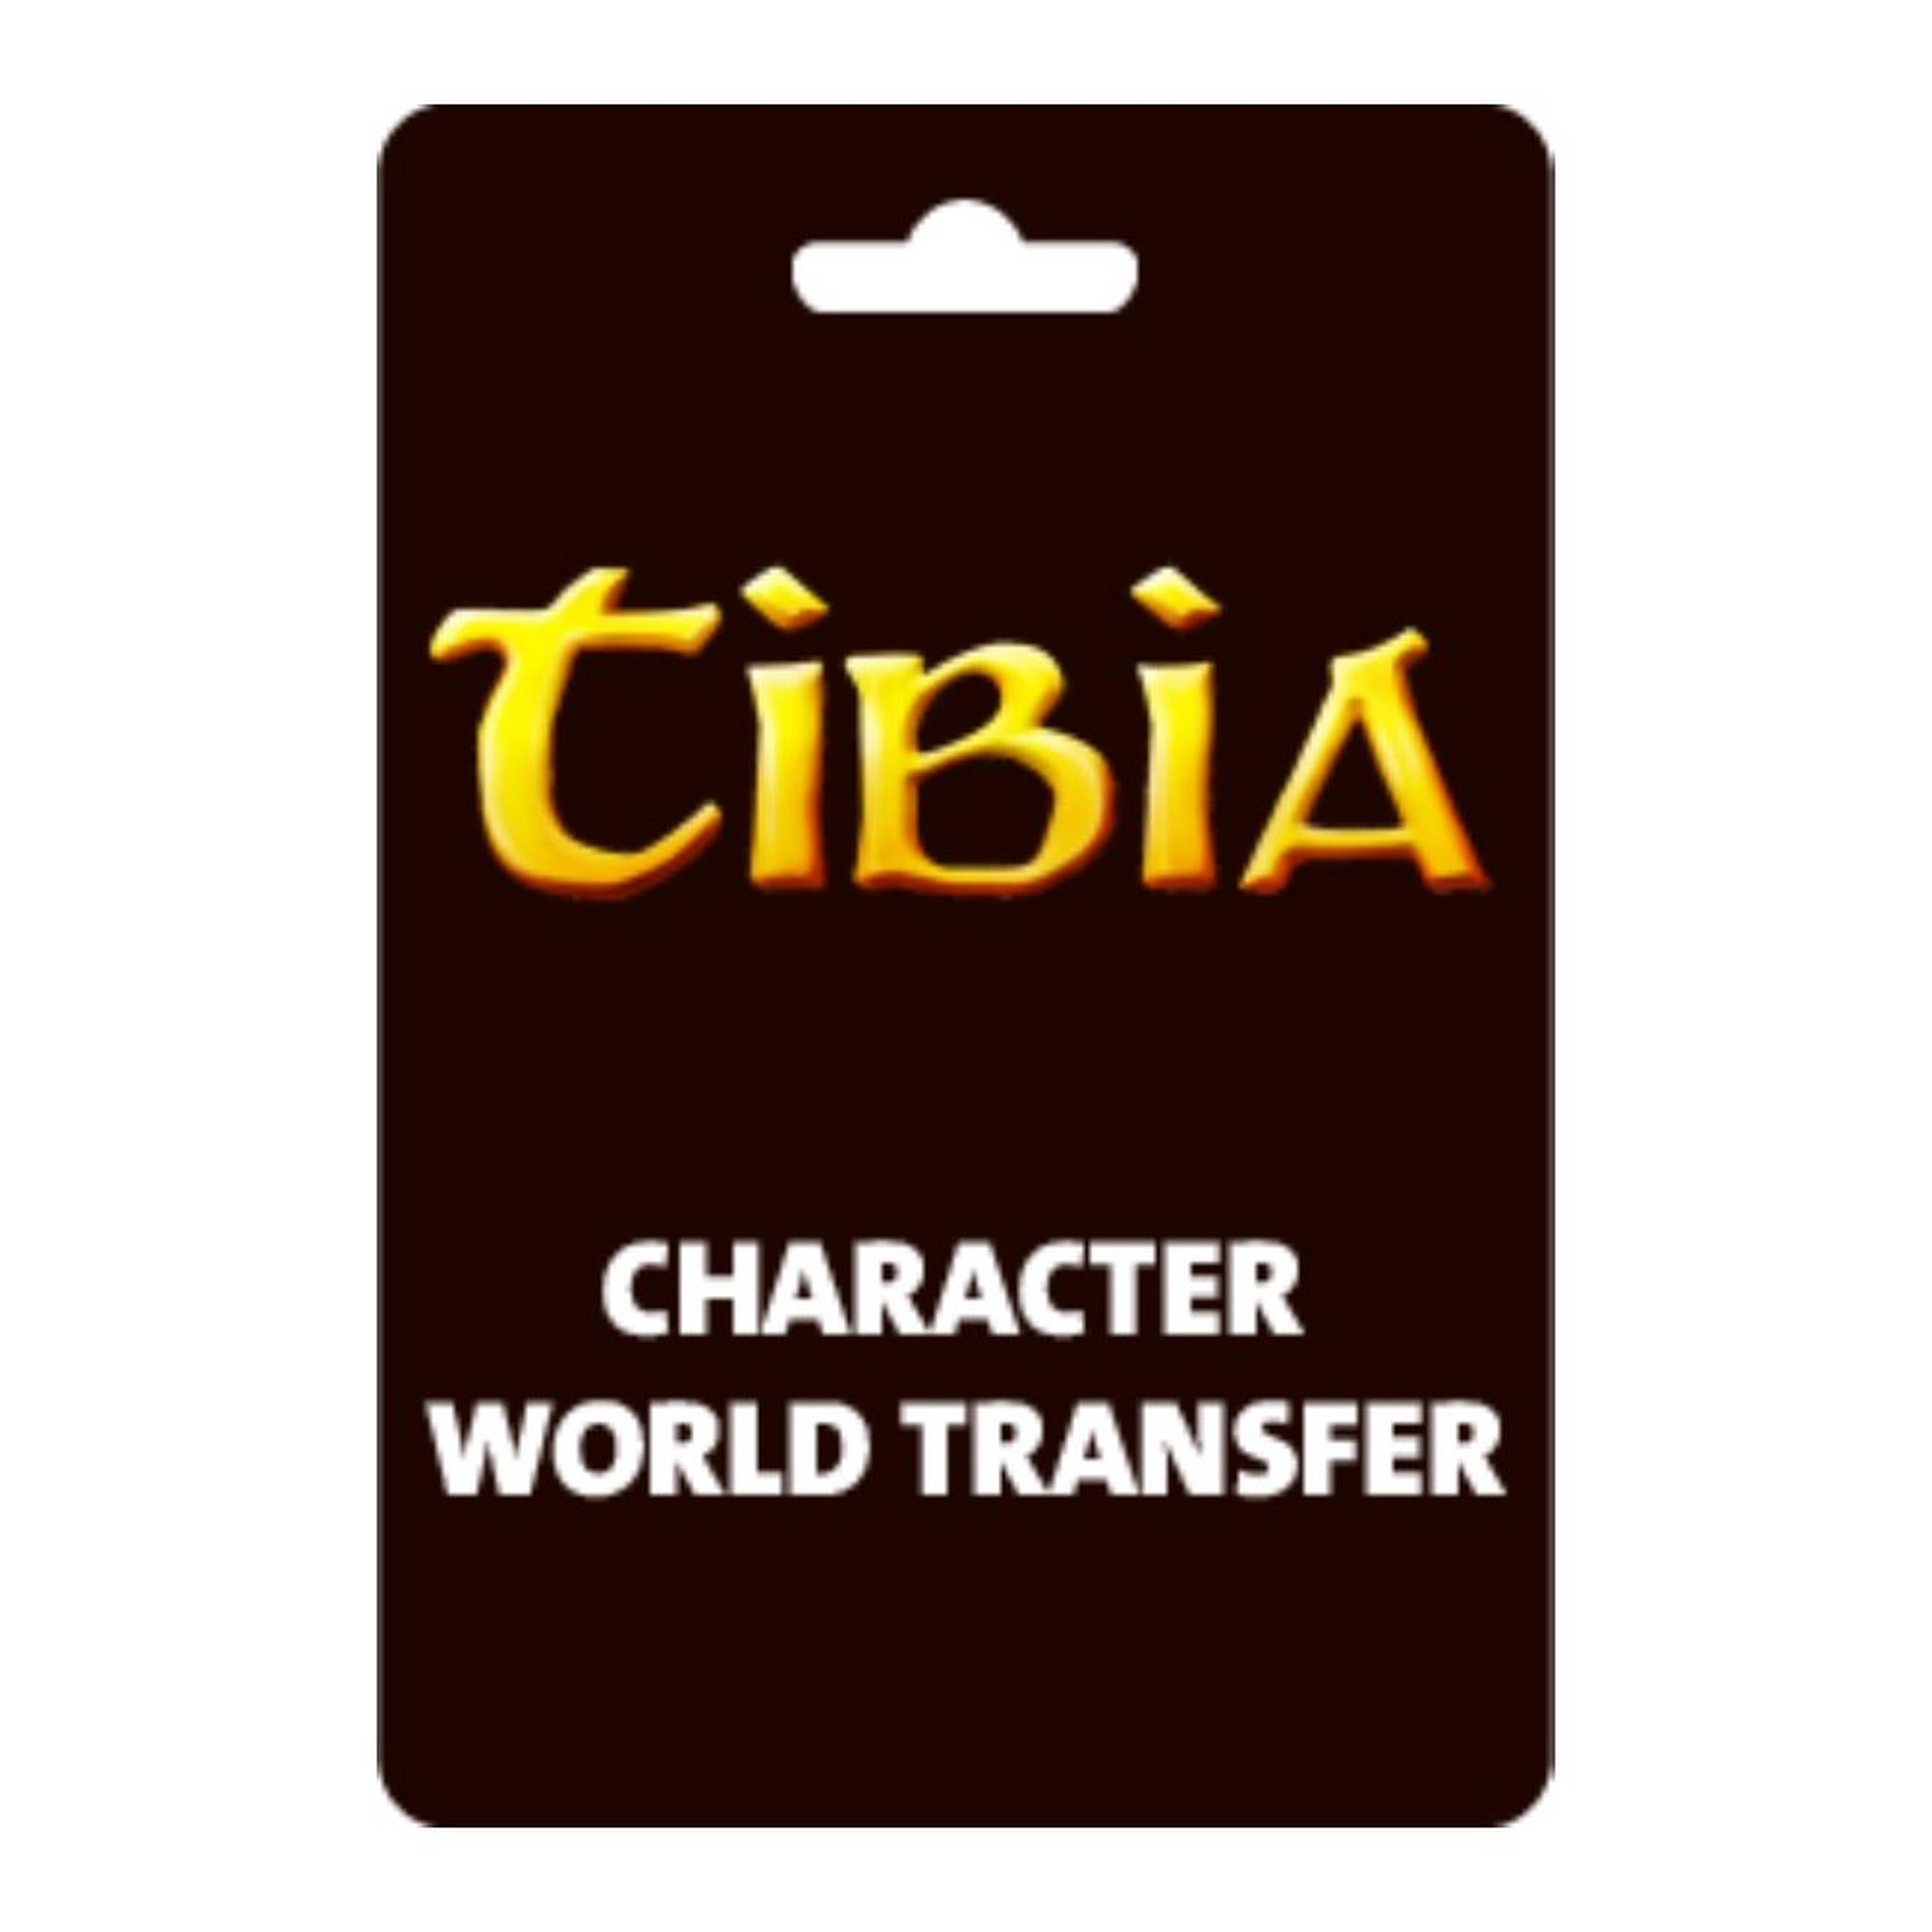 بطاقة تيبيا لعبة تحويل العالم